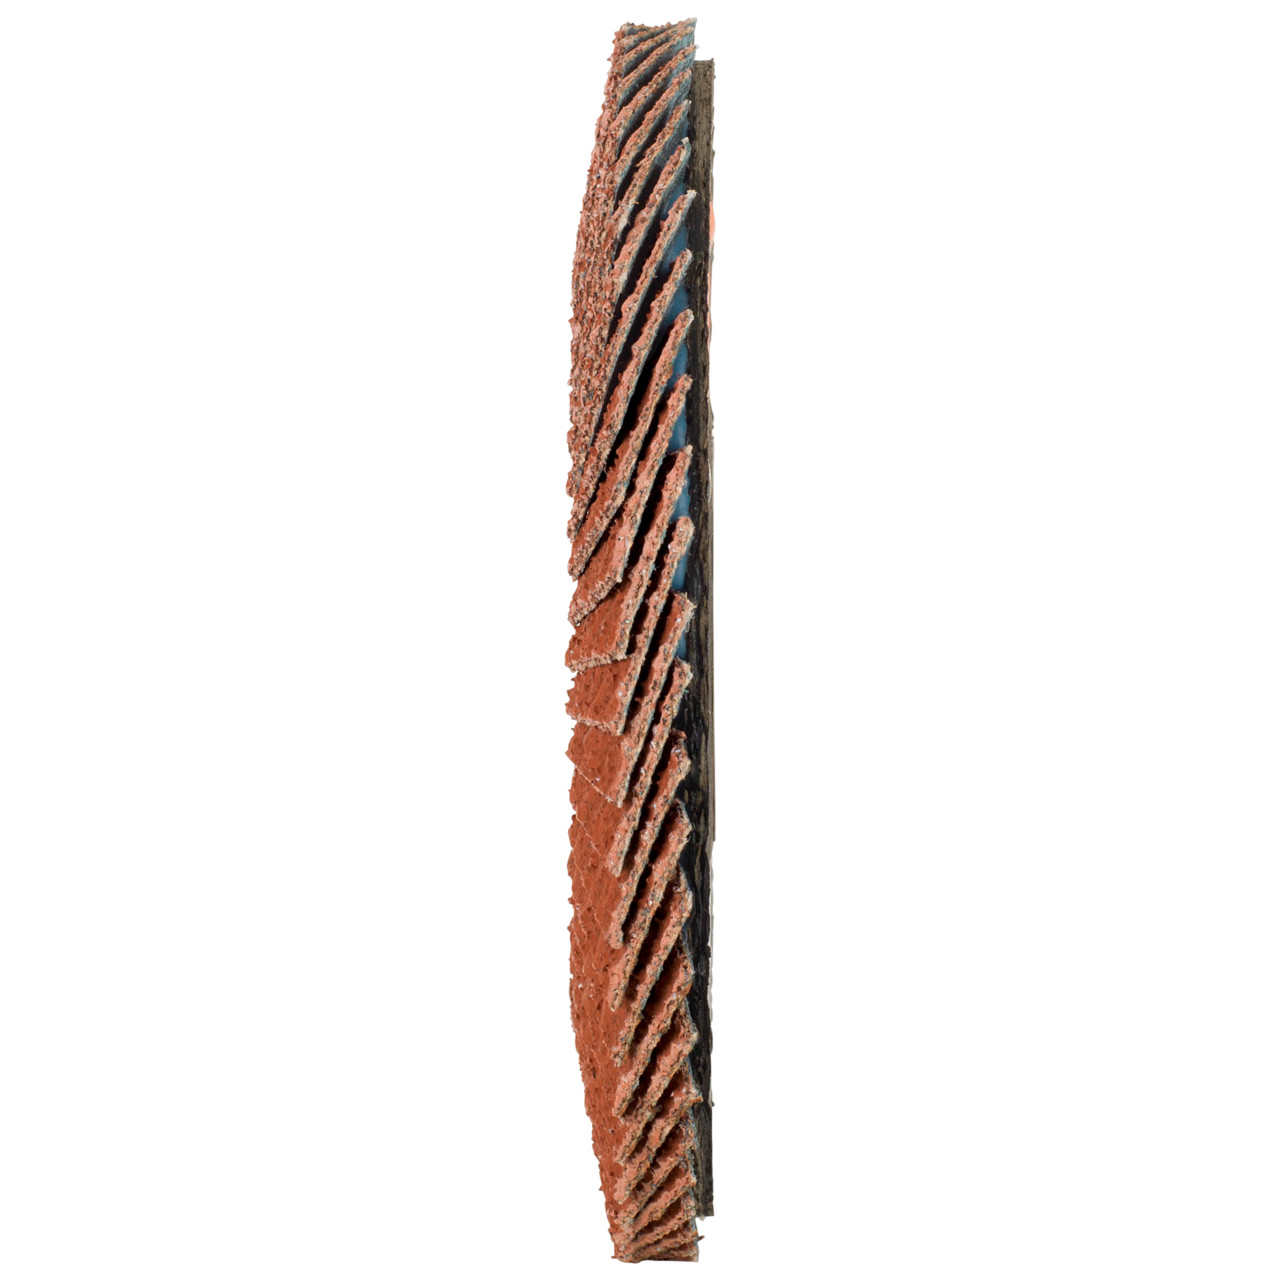 Tyrolit Arandela de seguridad dentada DxH 125x22,23 Para metales no férricos, P60, forma: 28A - versión recta (versión con cuerpo de soporte de fibra de vidrio), Art. 707160